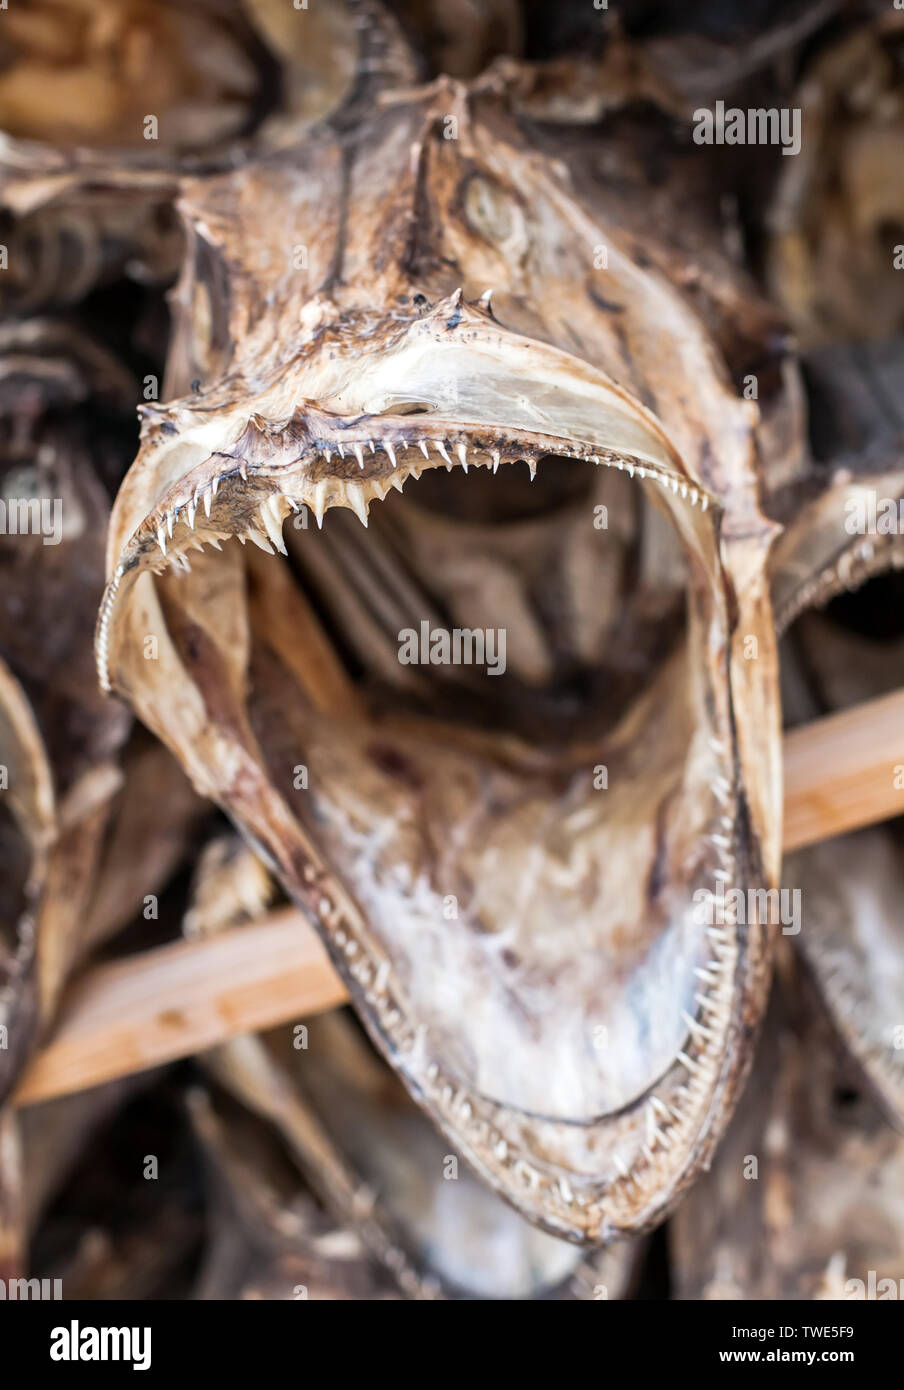 Pescado seco con amplias mandíbulas abiertas closeup vista frontal Foto de stock